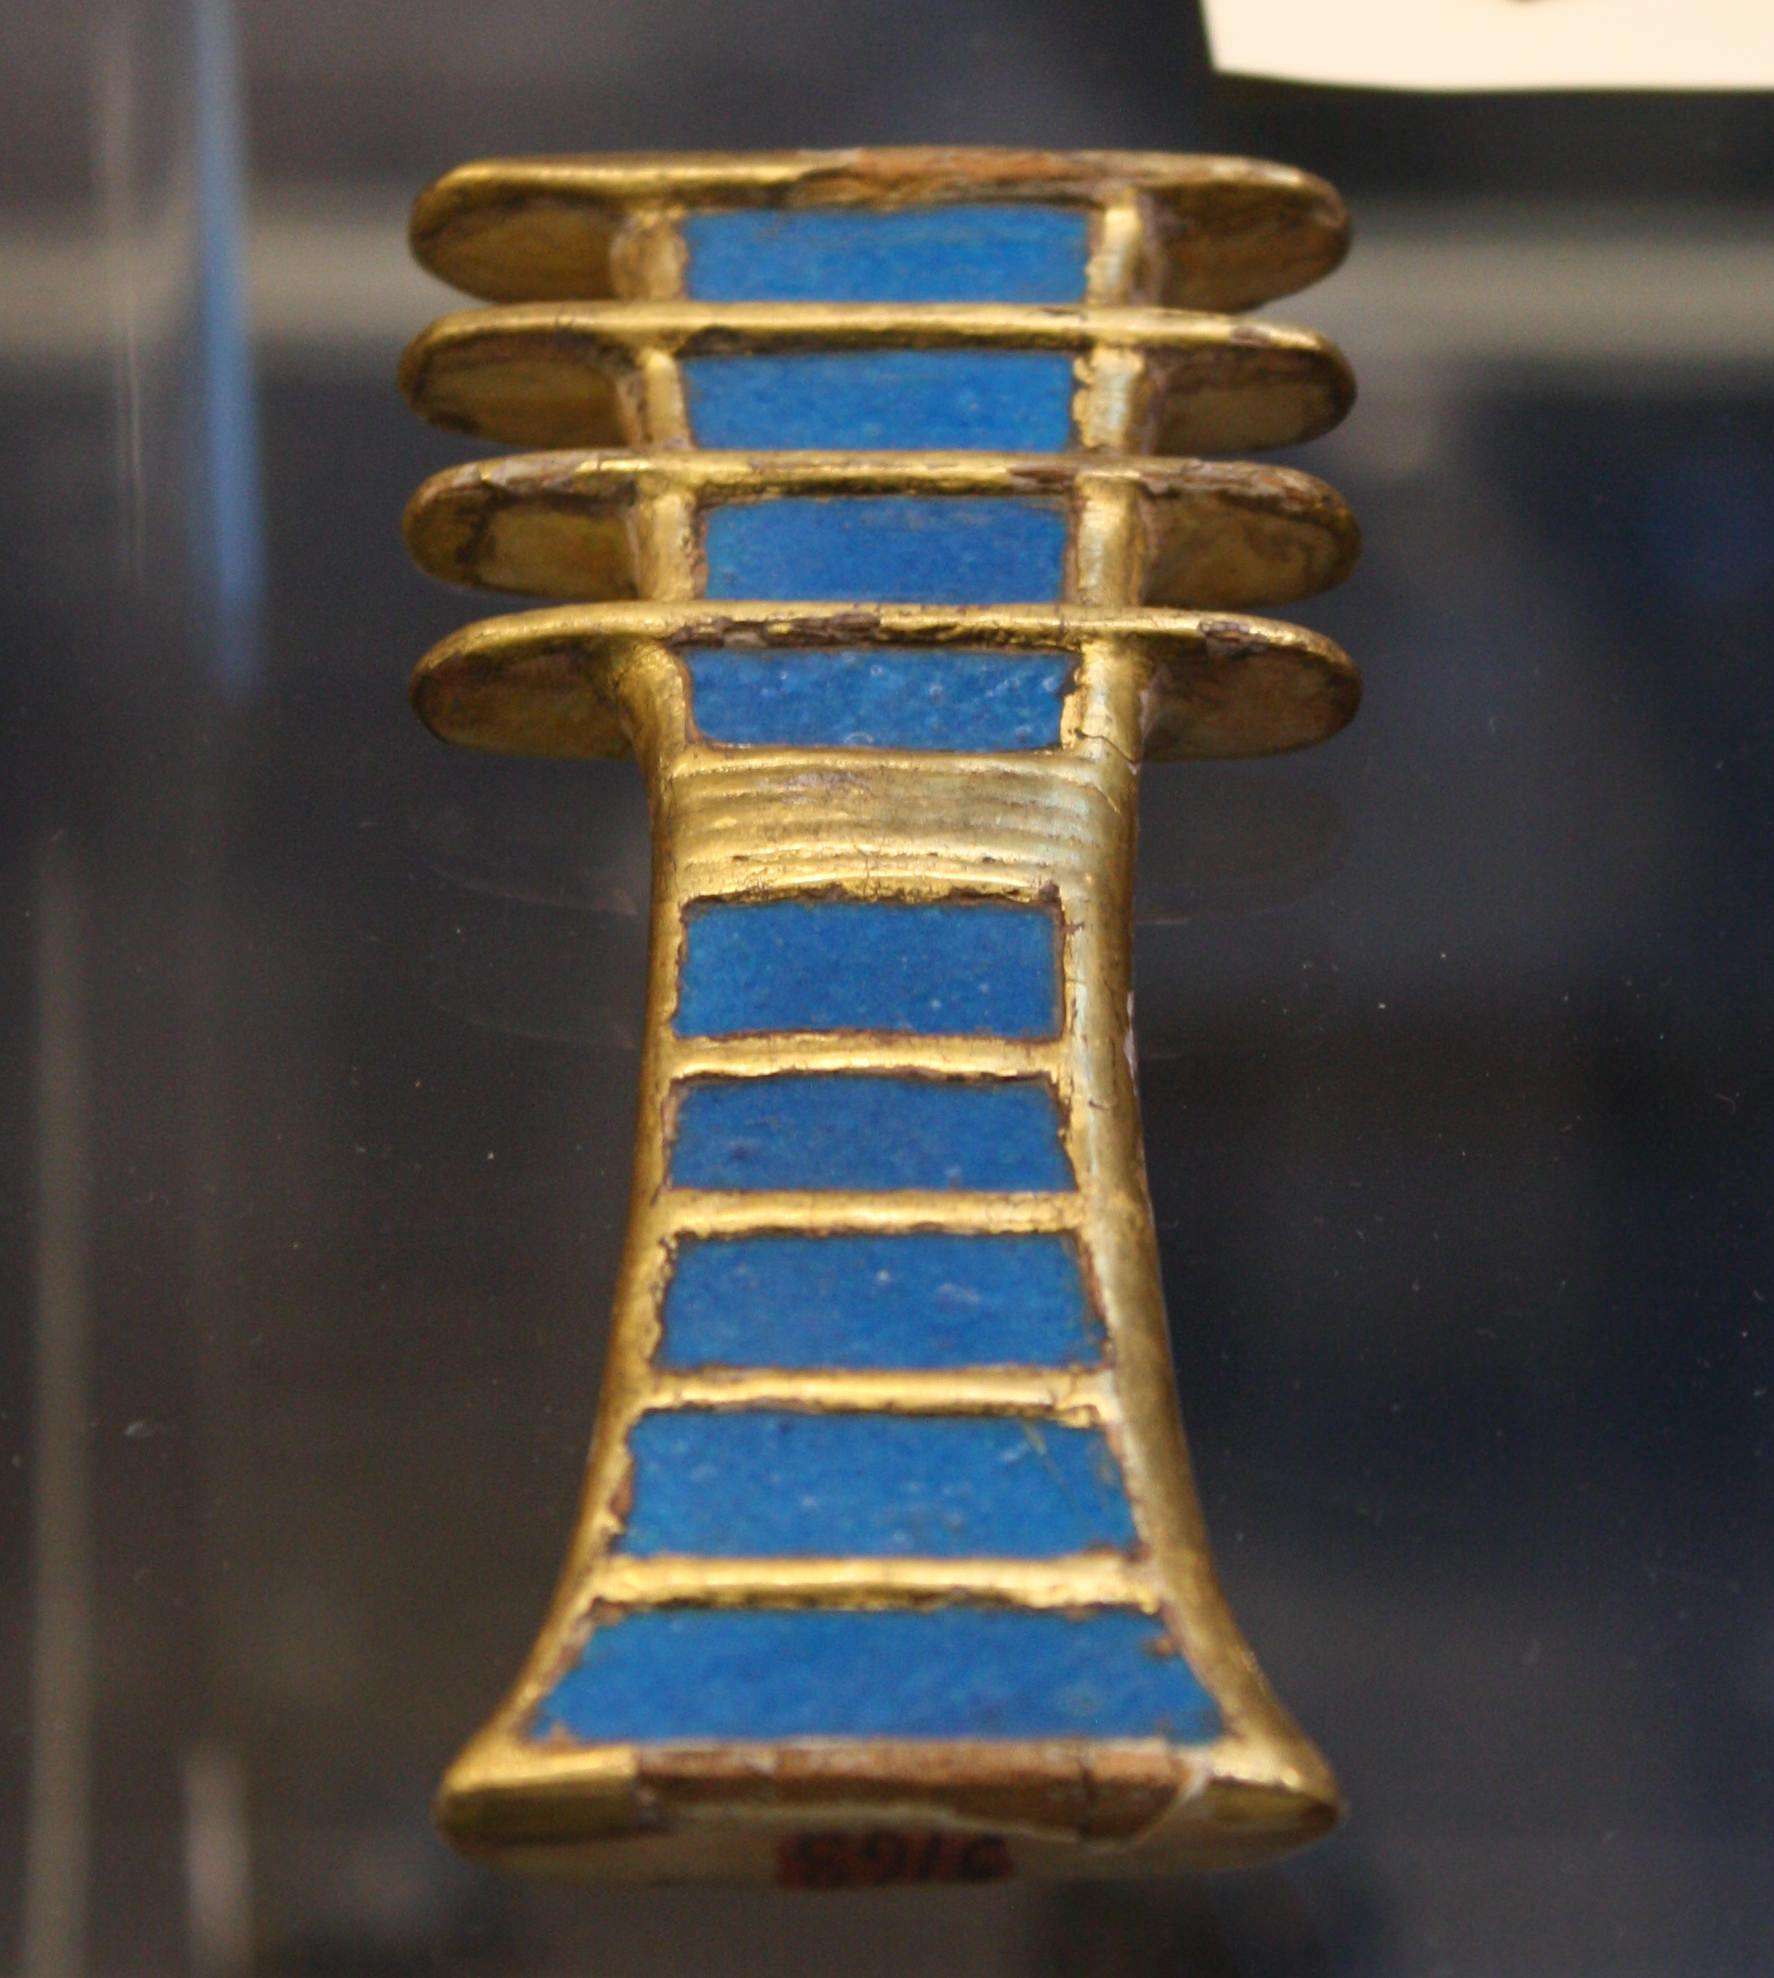 Een amulet van verguld hout en aardewerk djed (symbool van stabiliteit) uit het graf van koningin Nefertari. Dynastie XIX, 1279-1213 BCE. (Egyptisch Museum, Turijn)